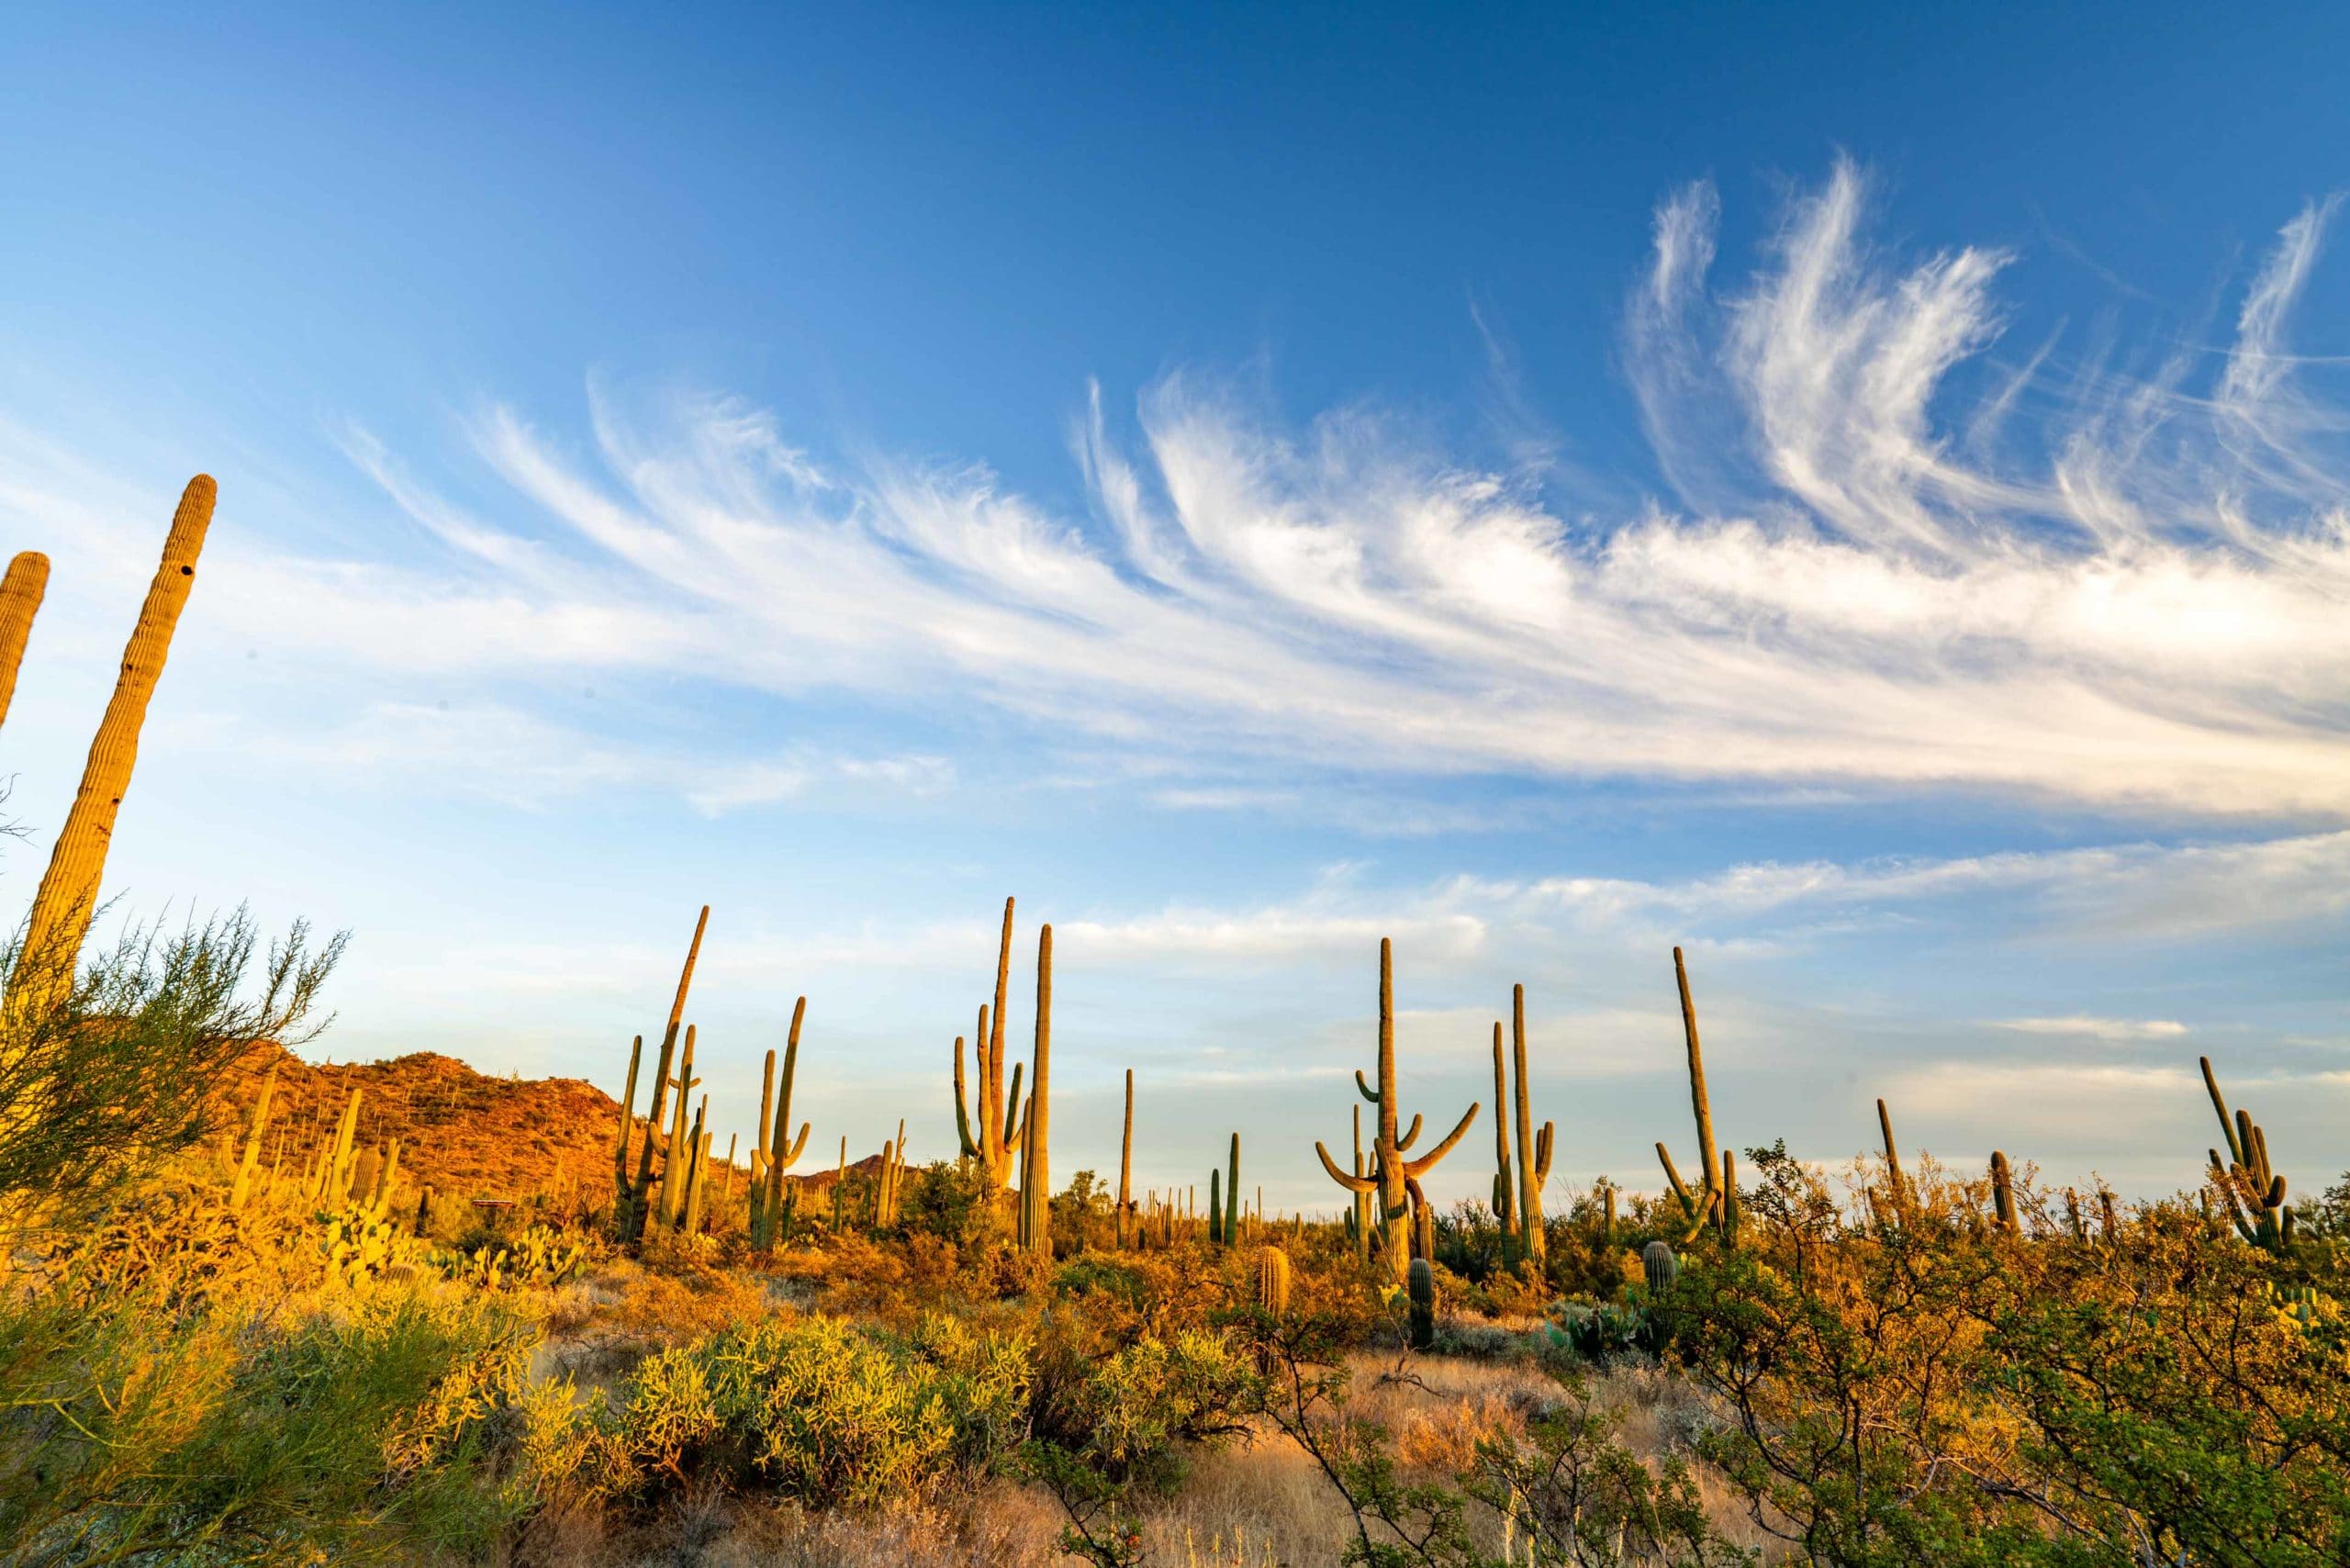 saguaro national park